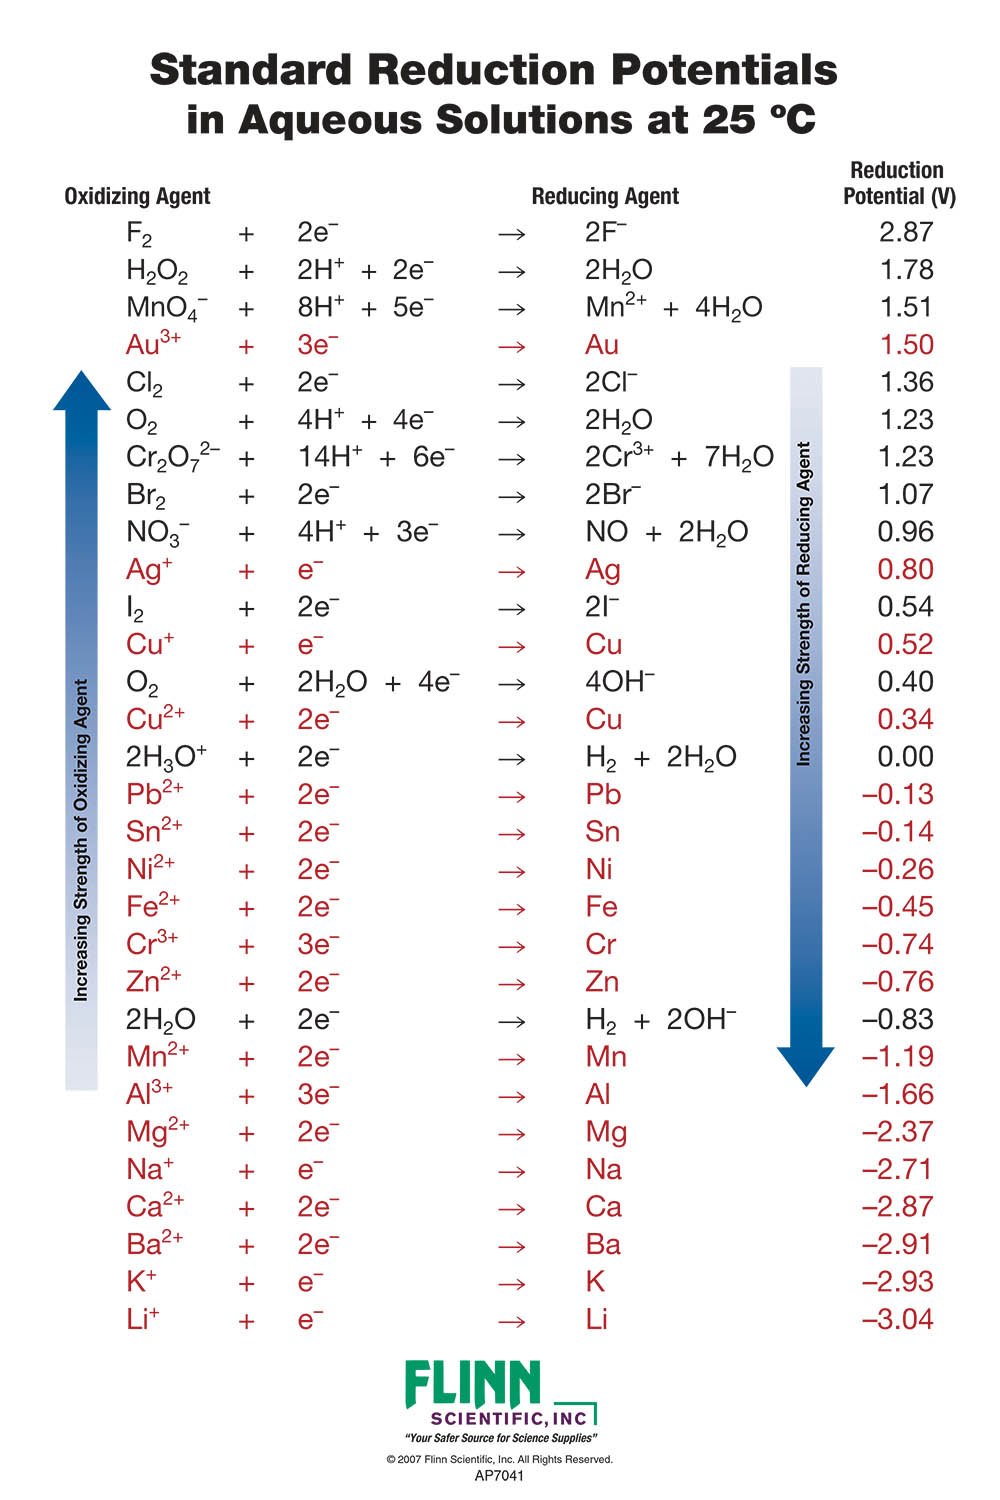 Activity Series Of Metals Chart